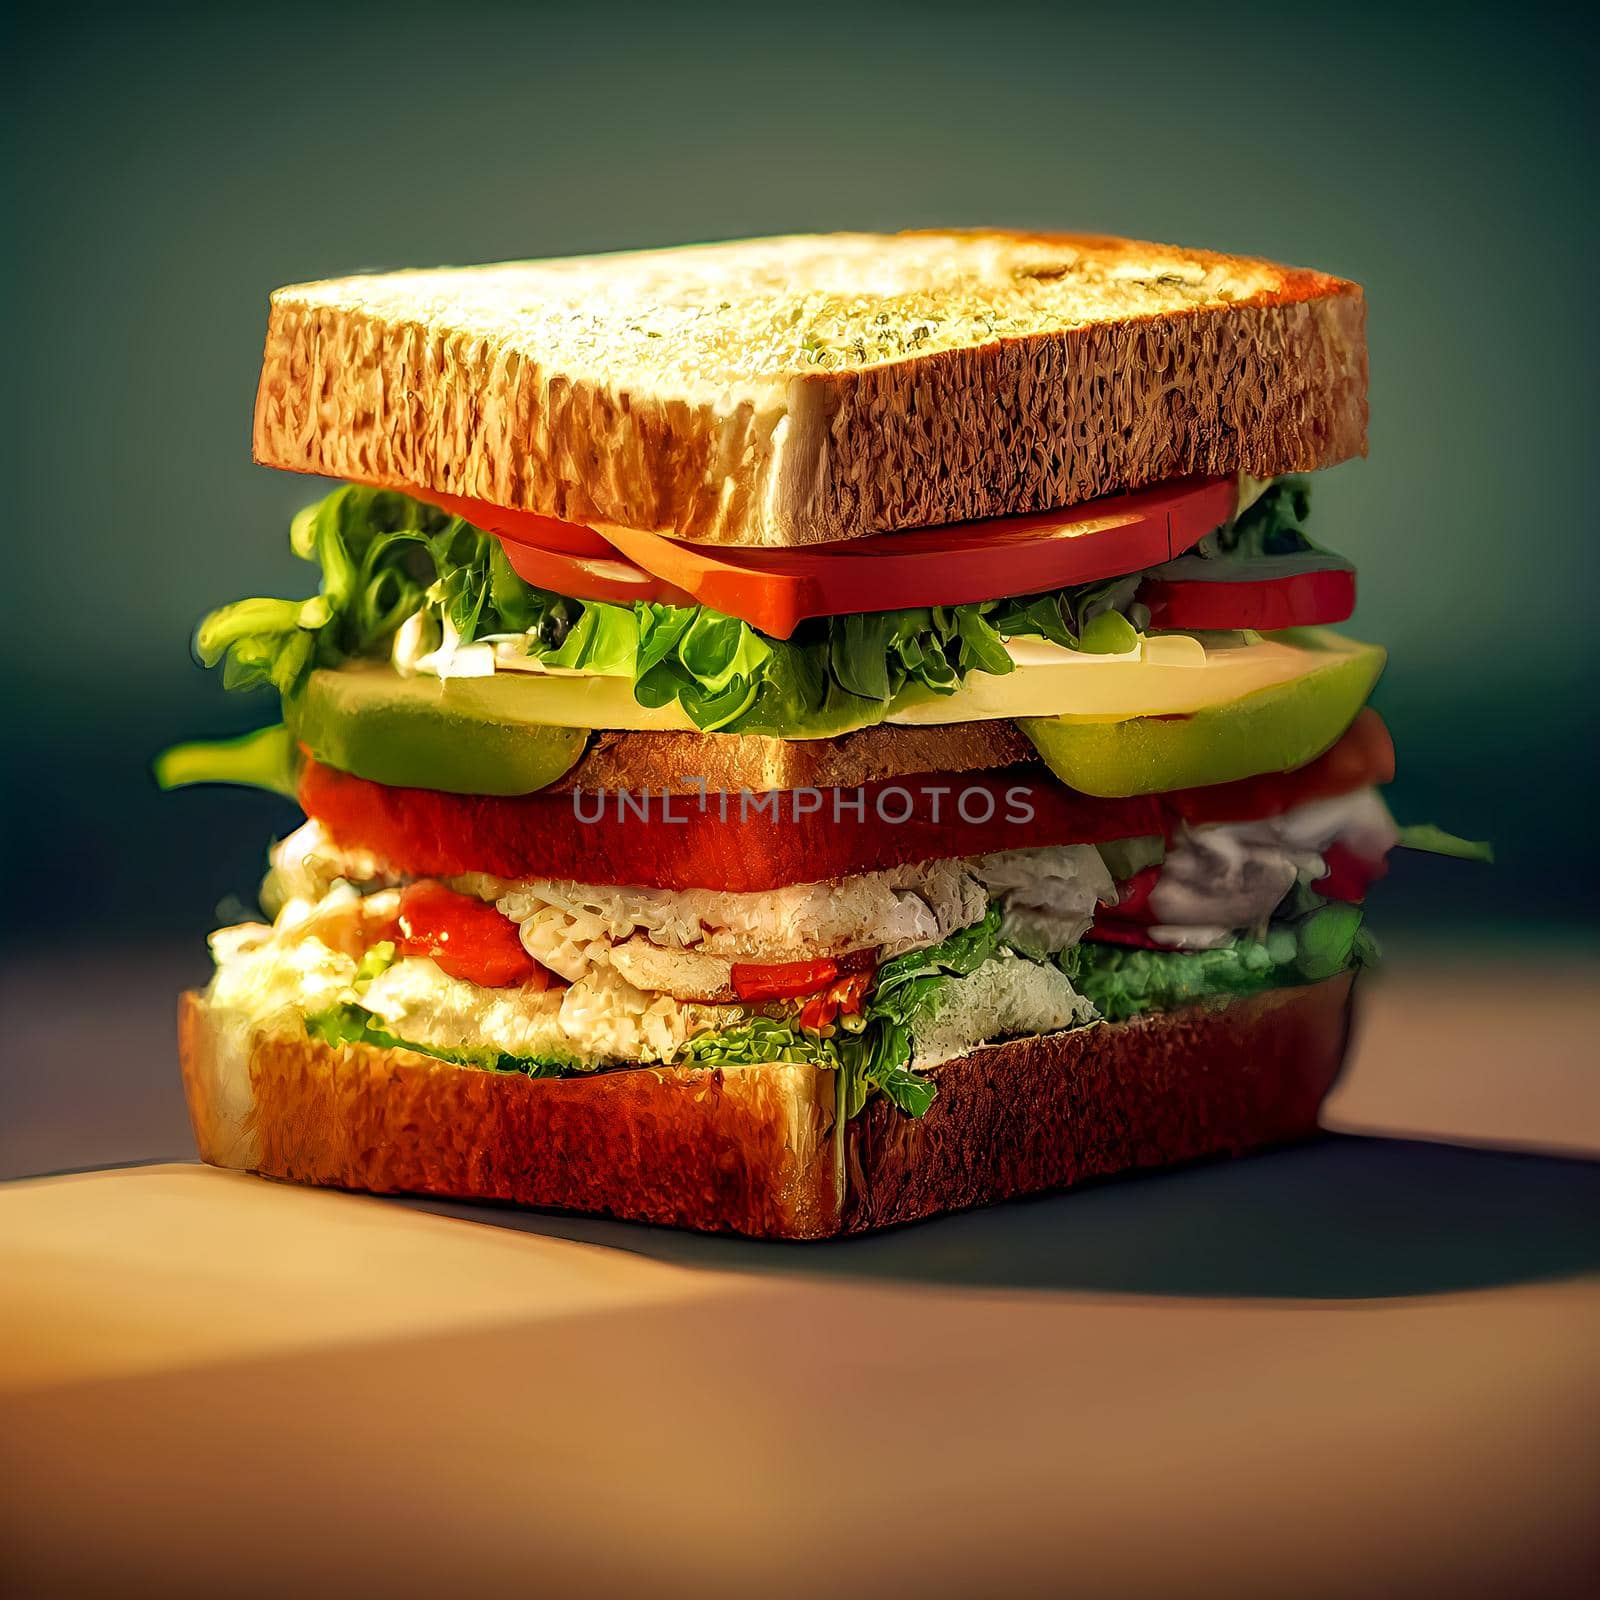 Big tasty sandwich with 2 slices of bread. Digital illustration by vmalafeevskiy